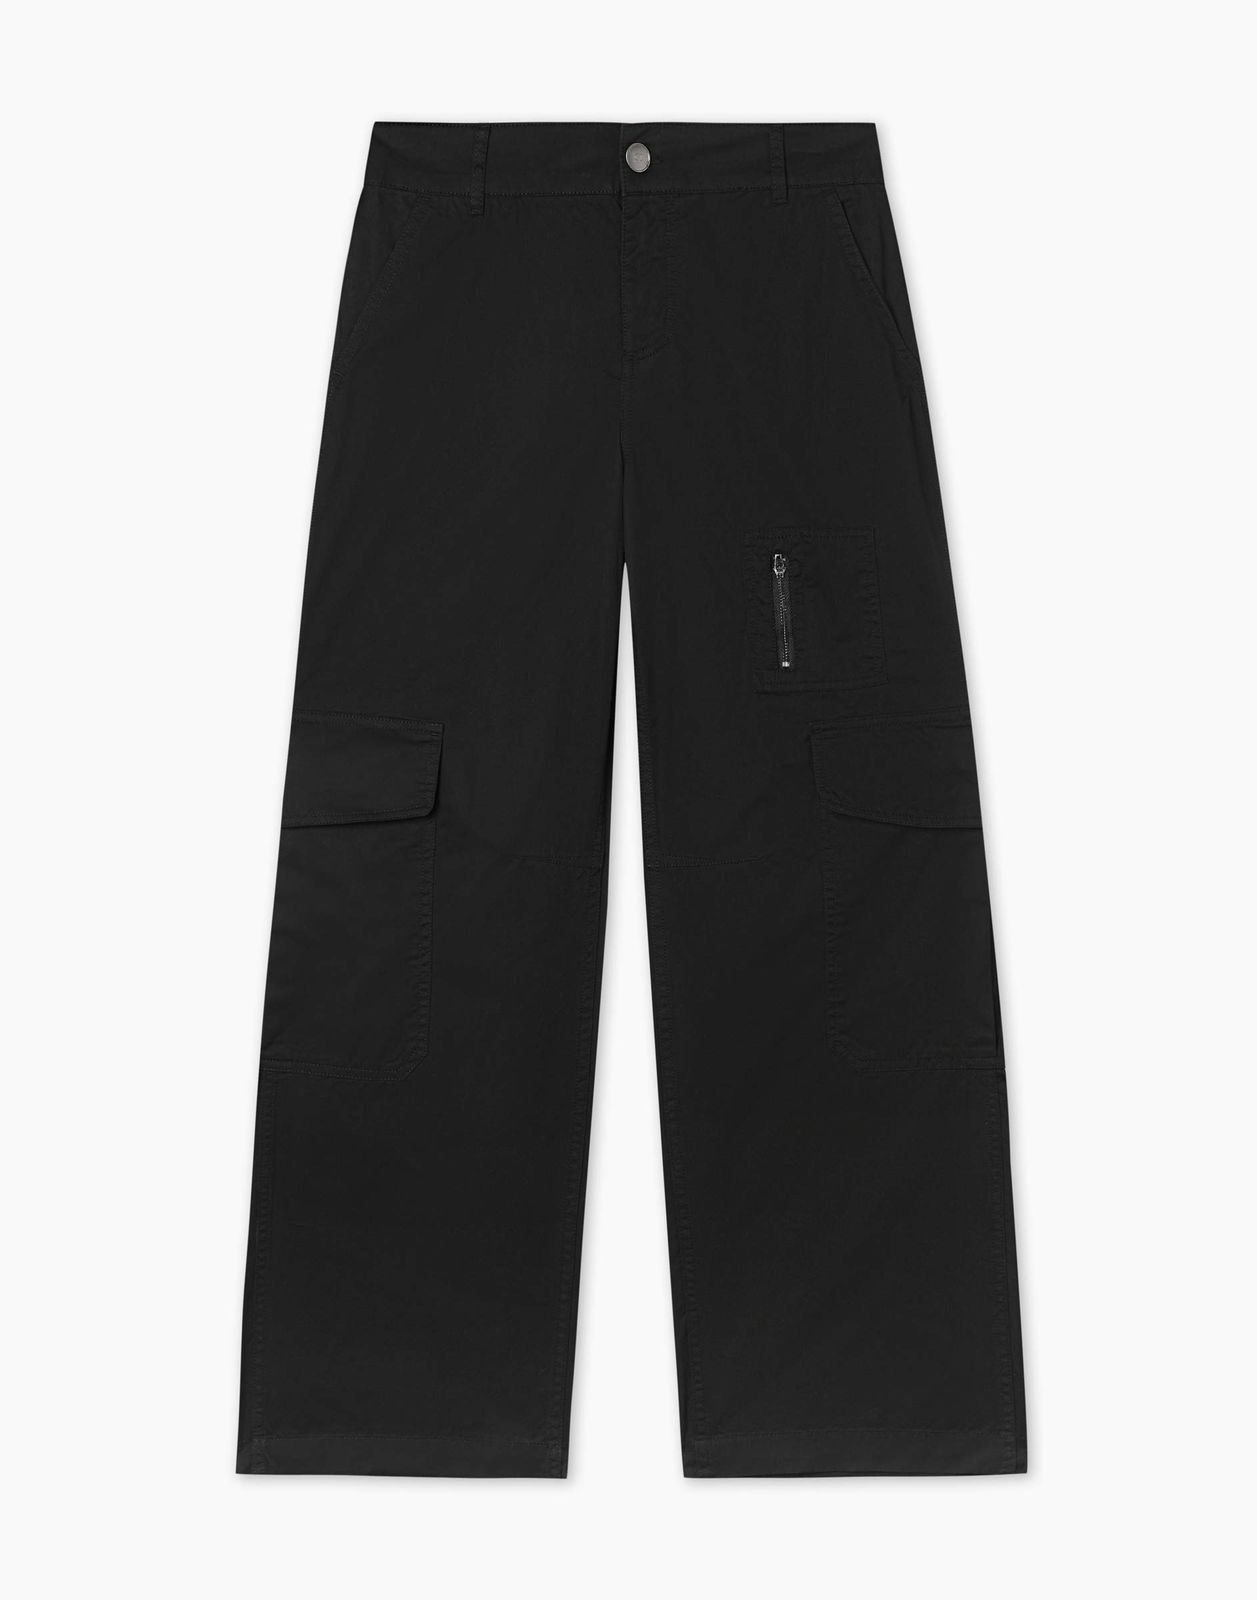 Брюки Gloria Jeans GPT009561 черный L/170 женские